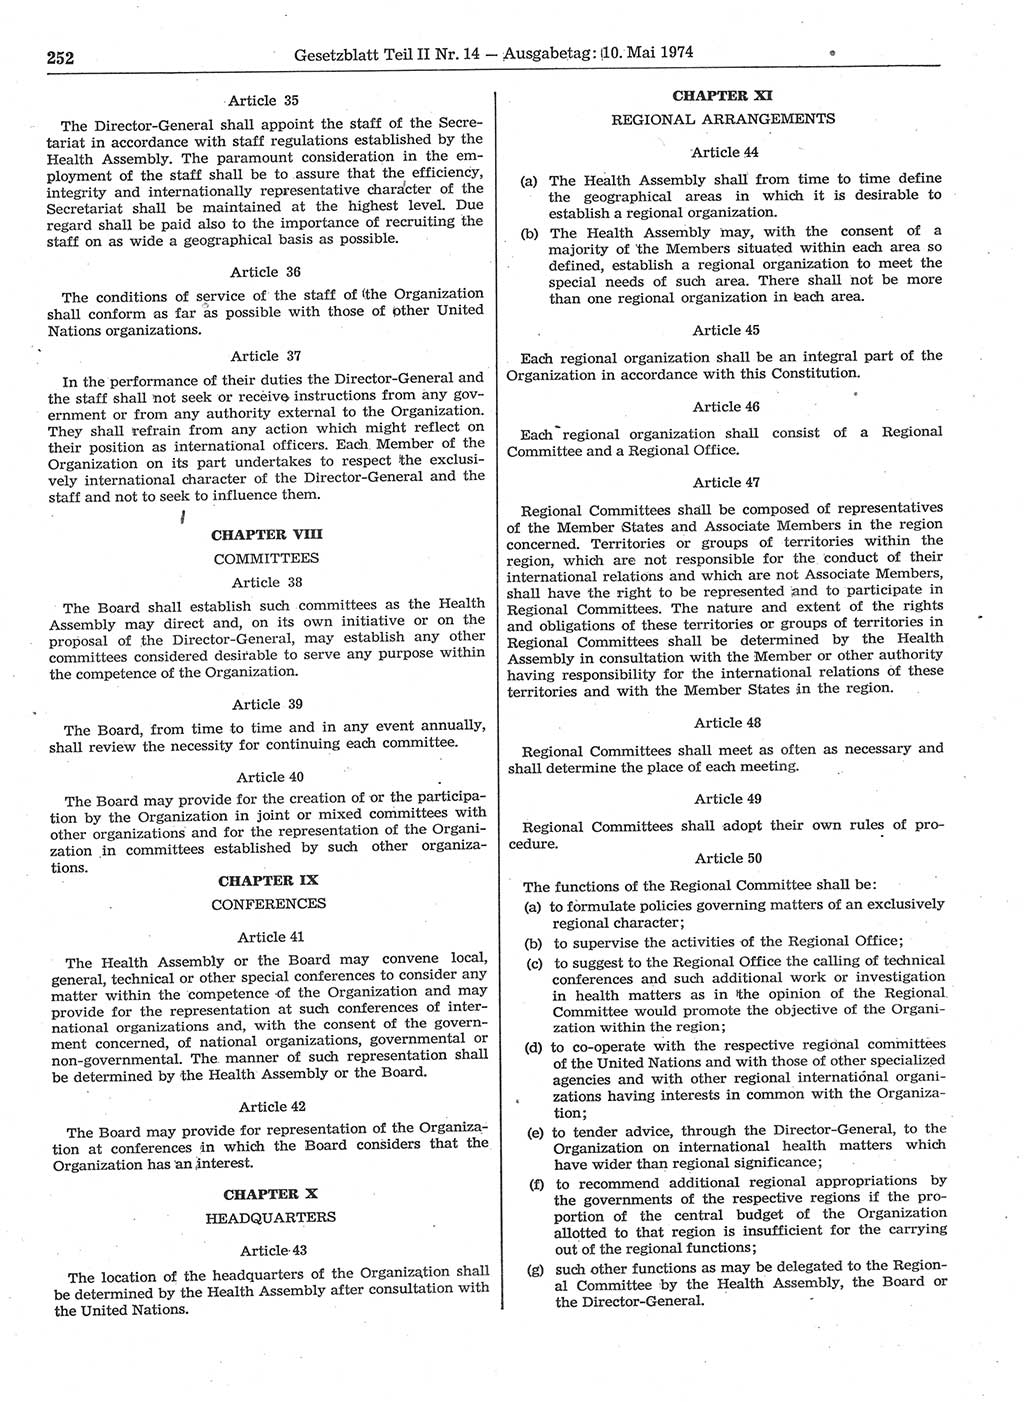 Gesetzblatt (GBl.) der Deutschen Demokratischen Republik (DDR) Teil ⅠⅠ 1974, Seite 252 (GBl. DDR ⅠⅠ 1974, S. 252)